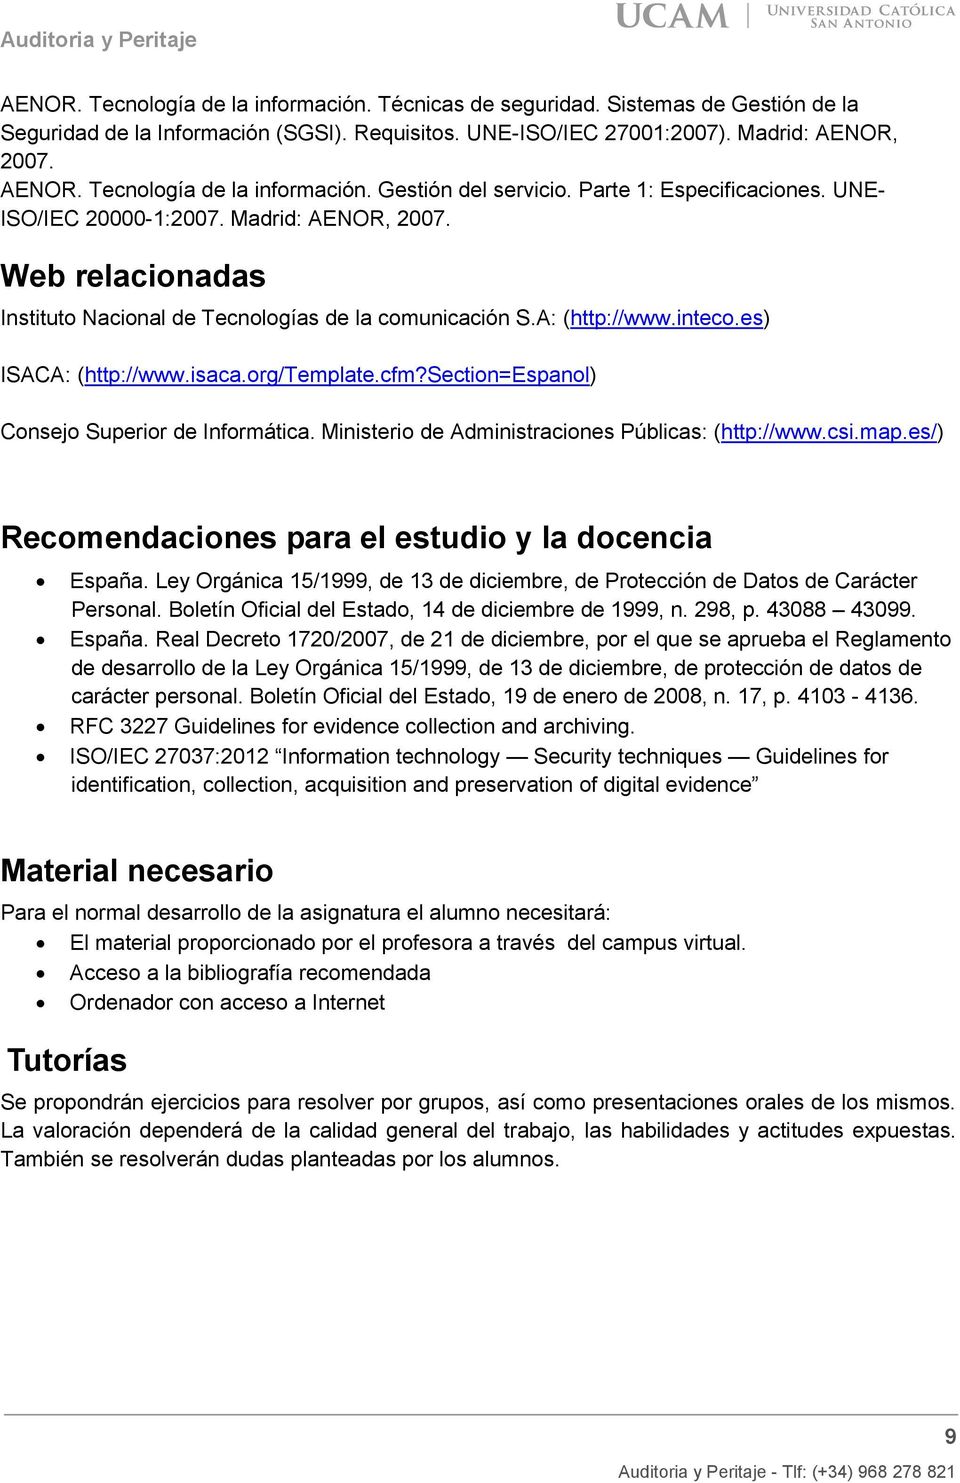 Web relacionadas Instituto Nacional de Tecnologías de la comunicación S.A: (http://www.inteco.es) ISACA: (http://www.isaca.org/template.cfm?section=espanol) Consejo Superior de Informática.